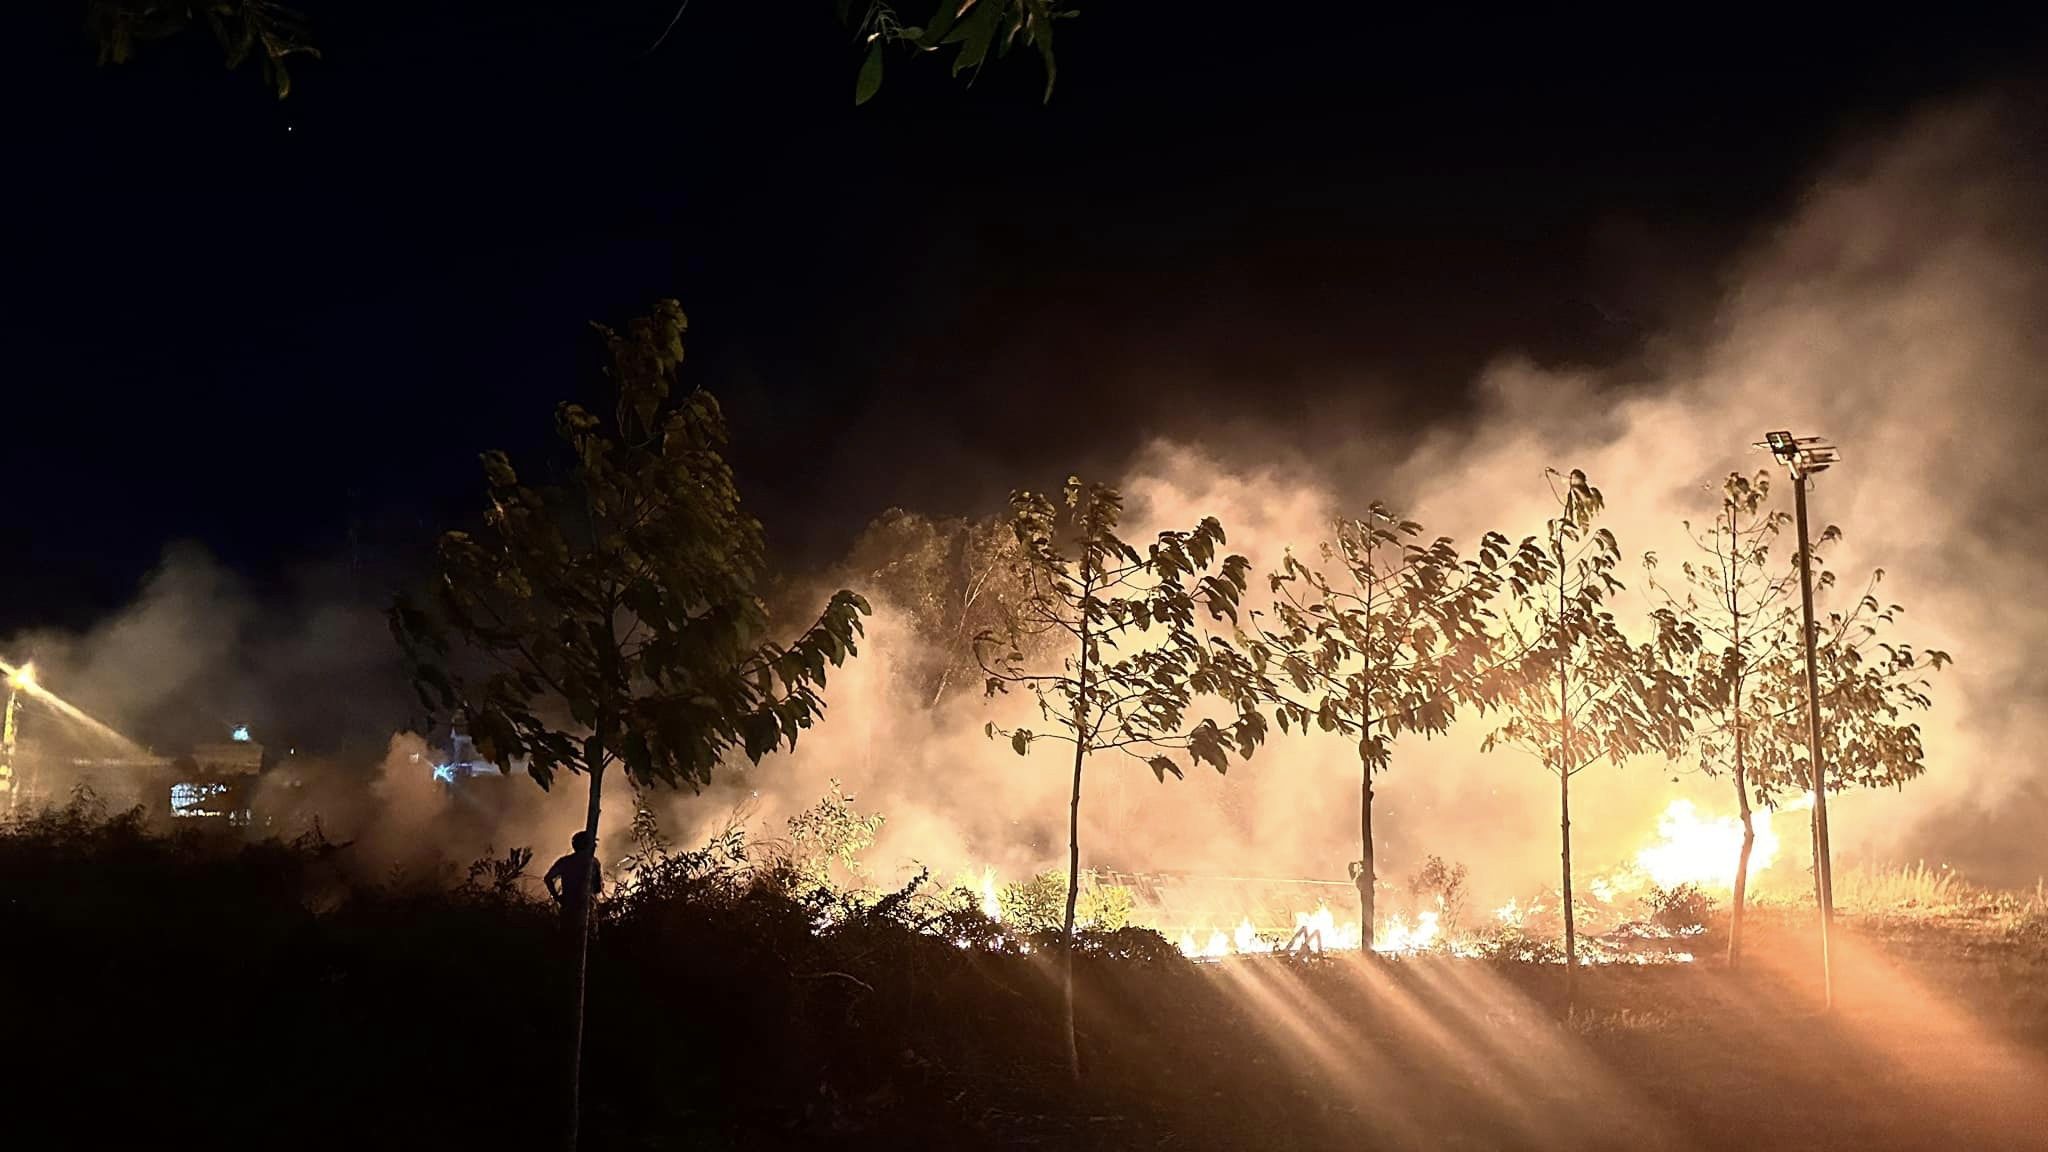 Cháy trong khuôn viên Trung tâm bảo trợ xã hội tổng hợp tỉnh Bình Thuận tối mùng 4 Tết Giáp Thìn - Ảnh 1.